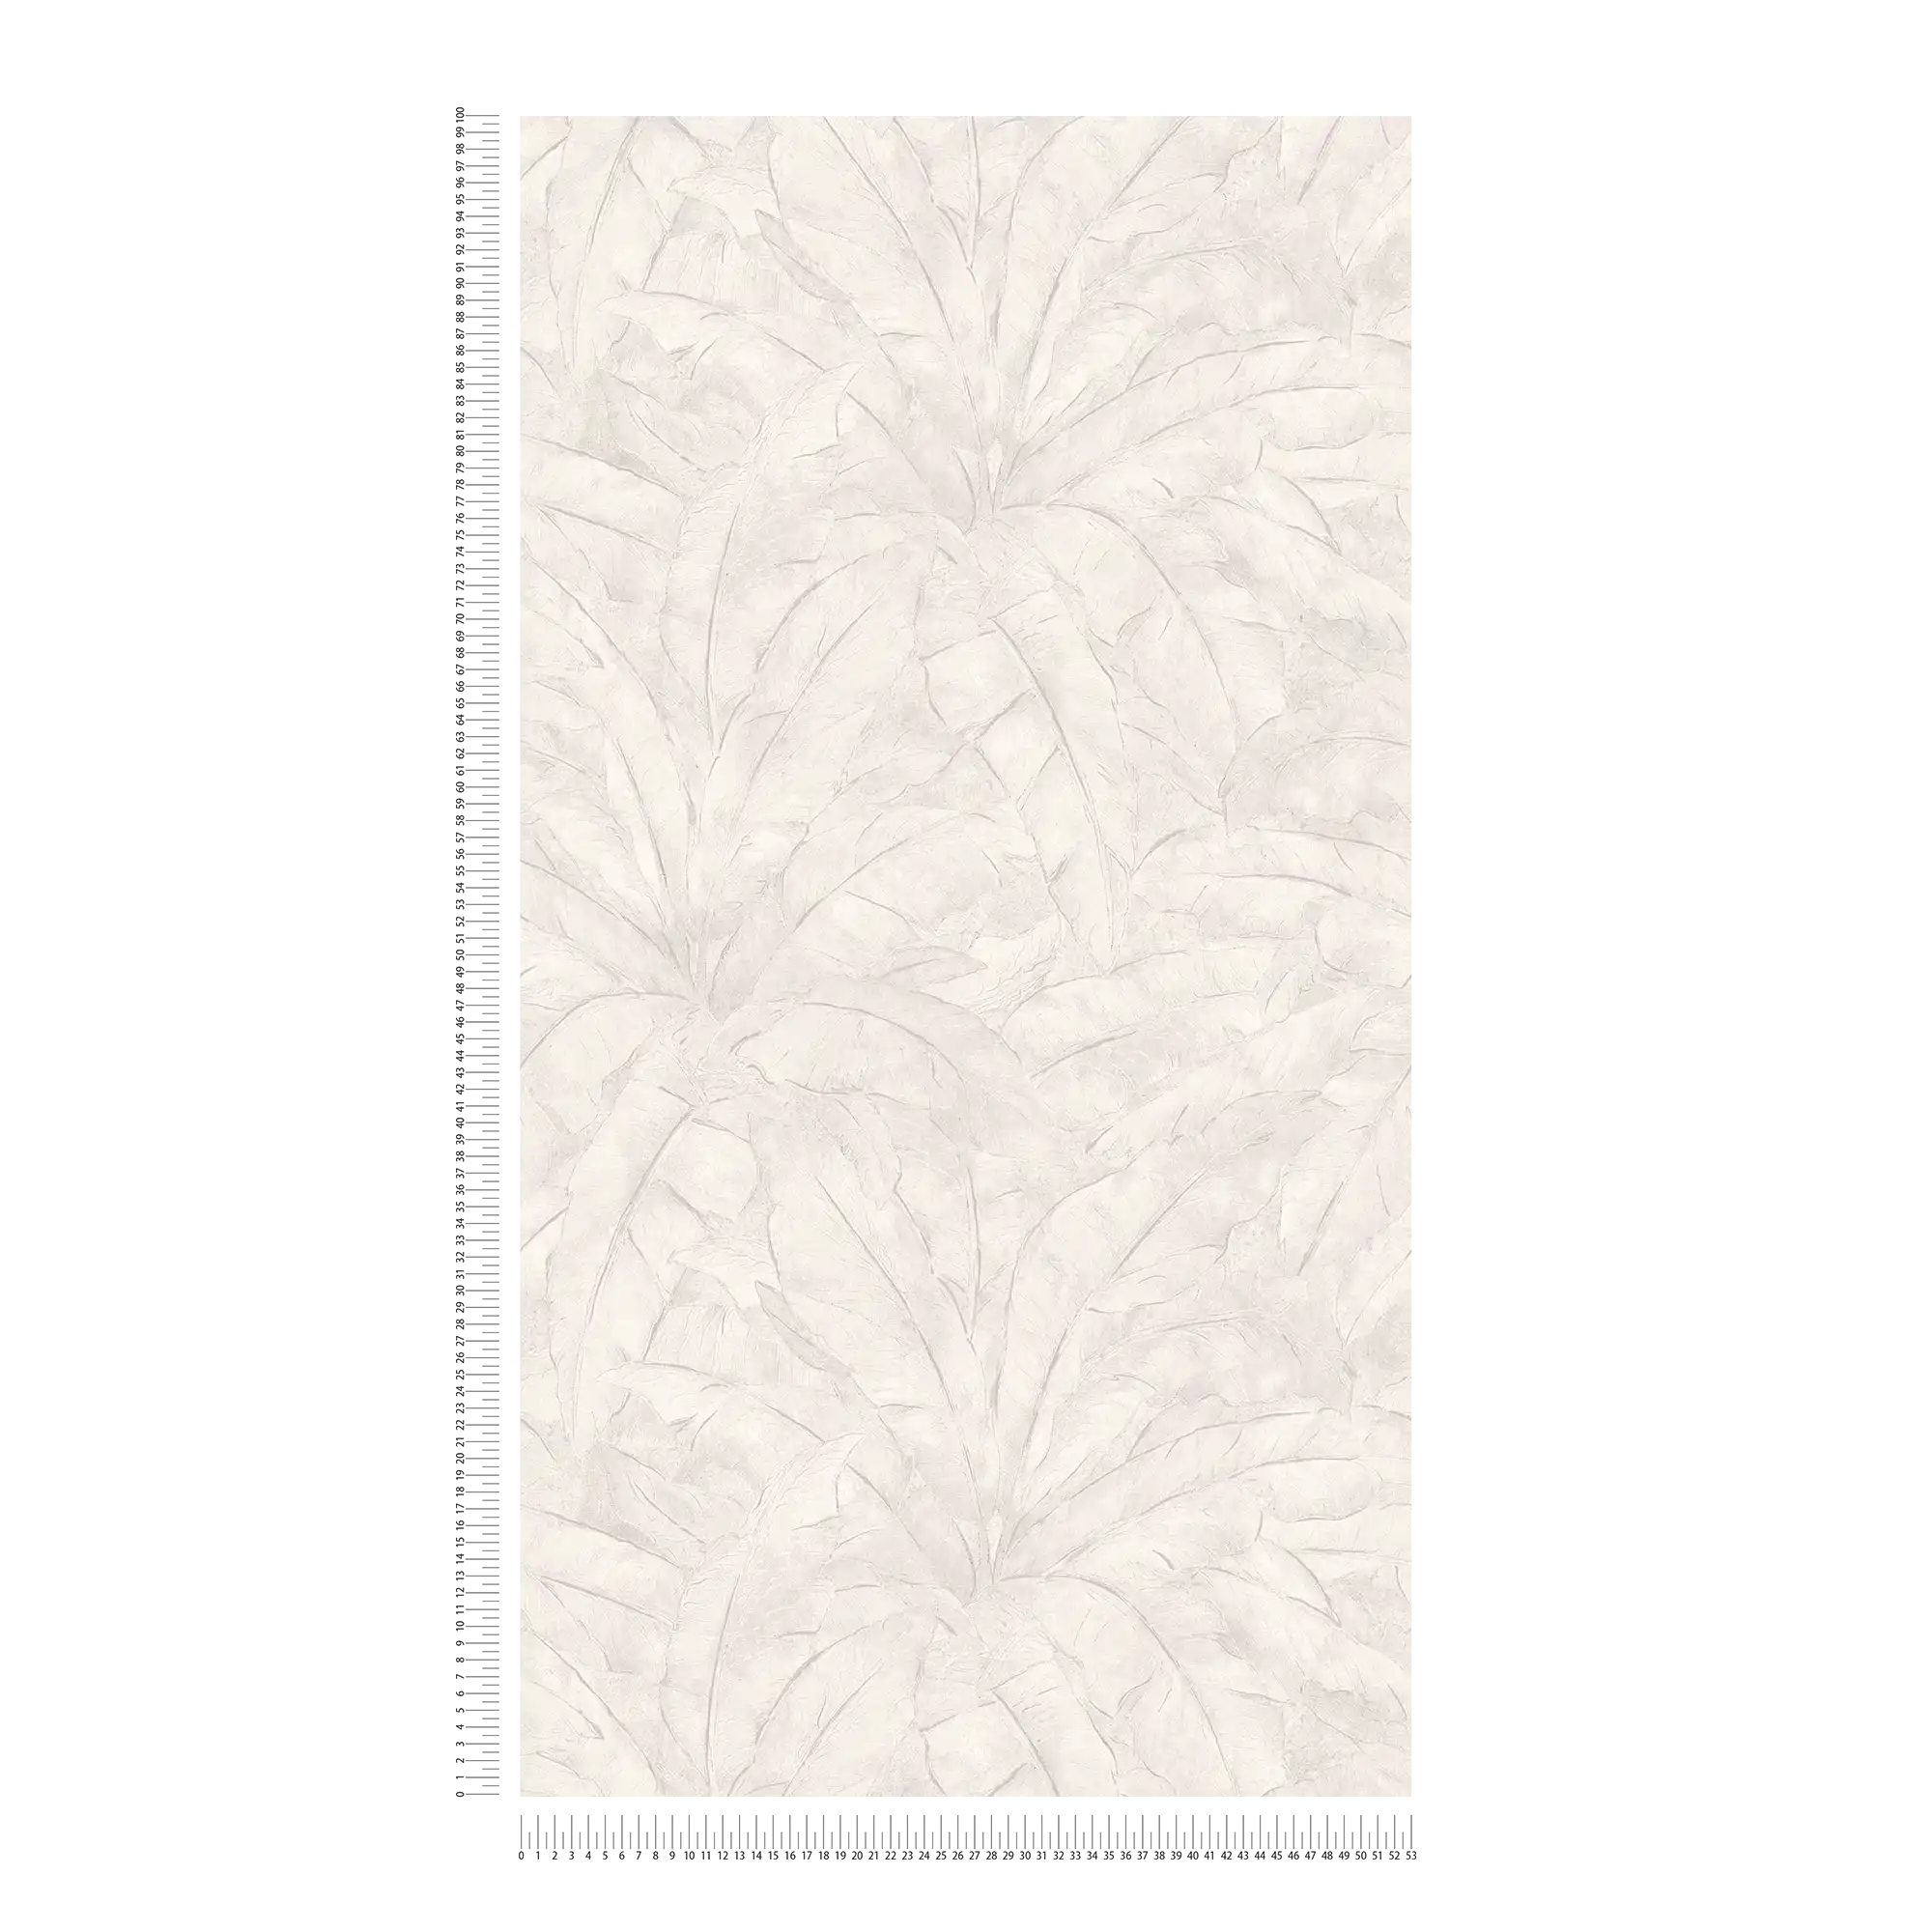             Papel pintado selva con acento plateado - gris, plata, blanco
        